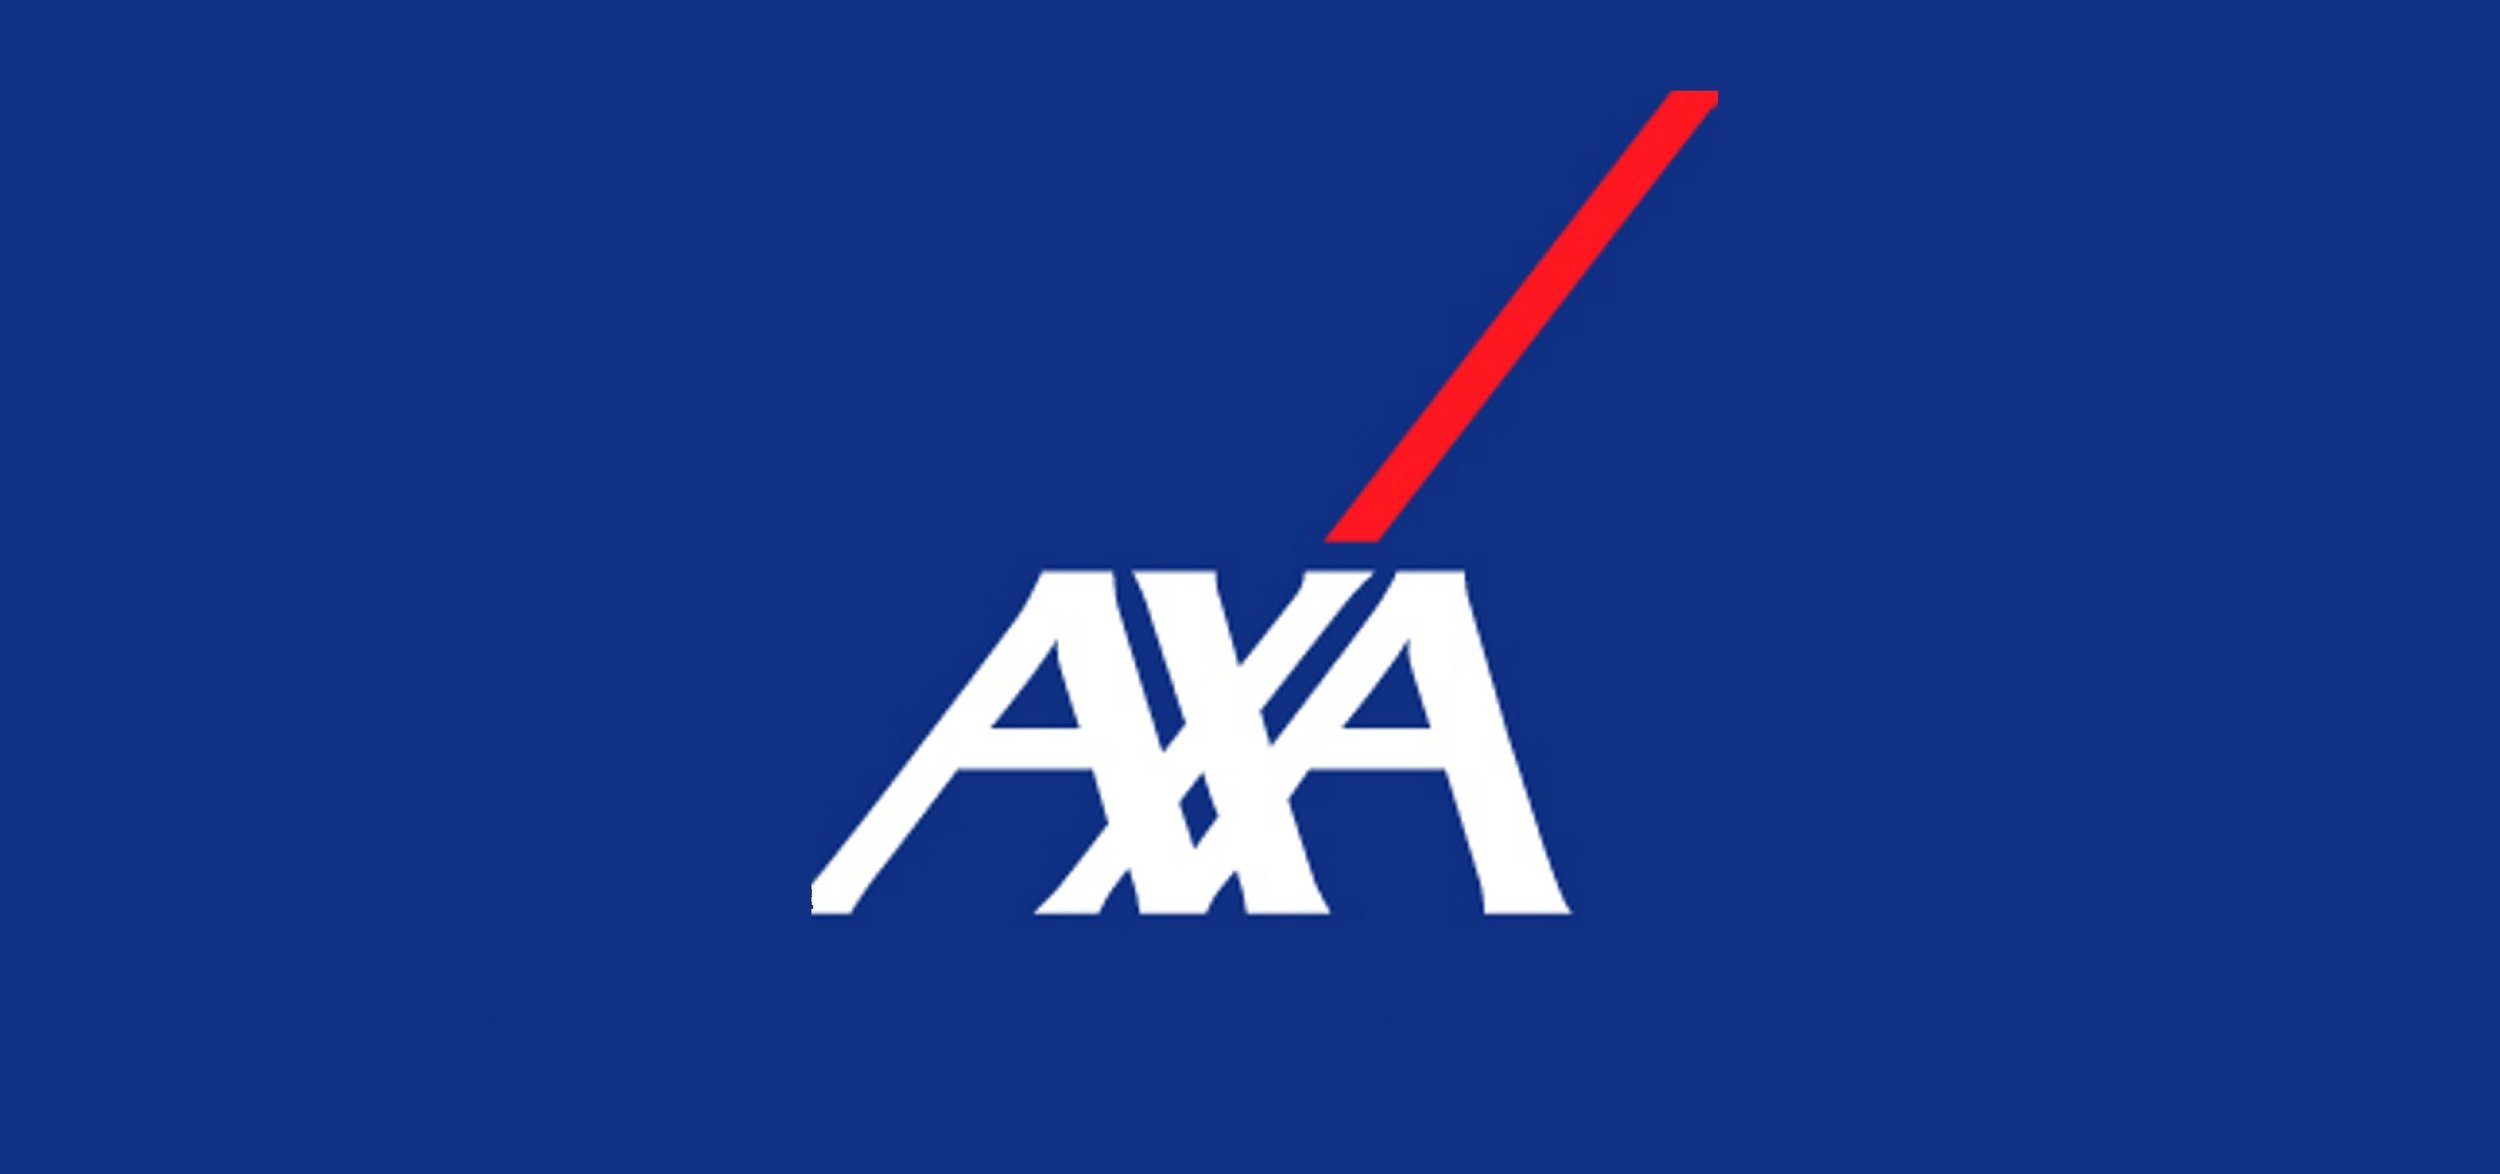 AXA-logo.jpg